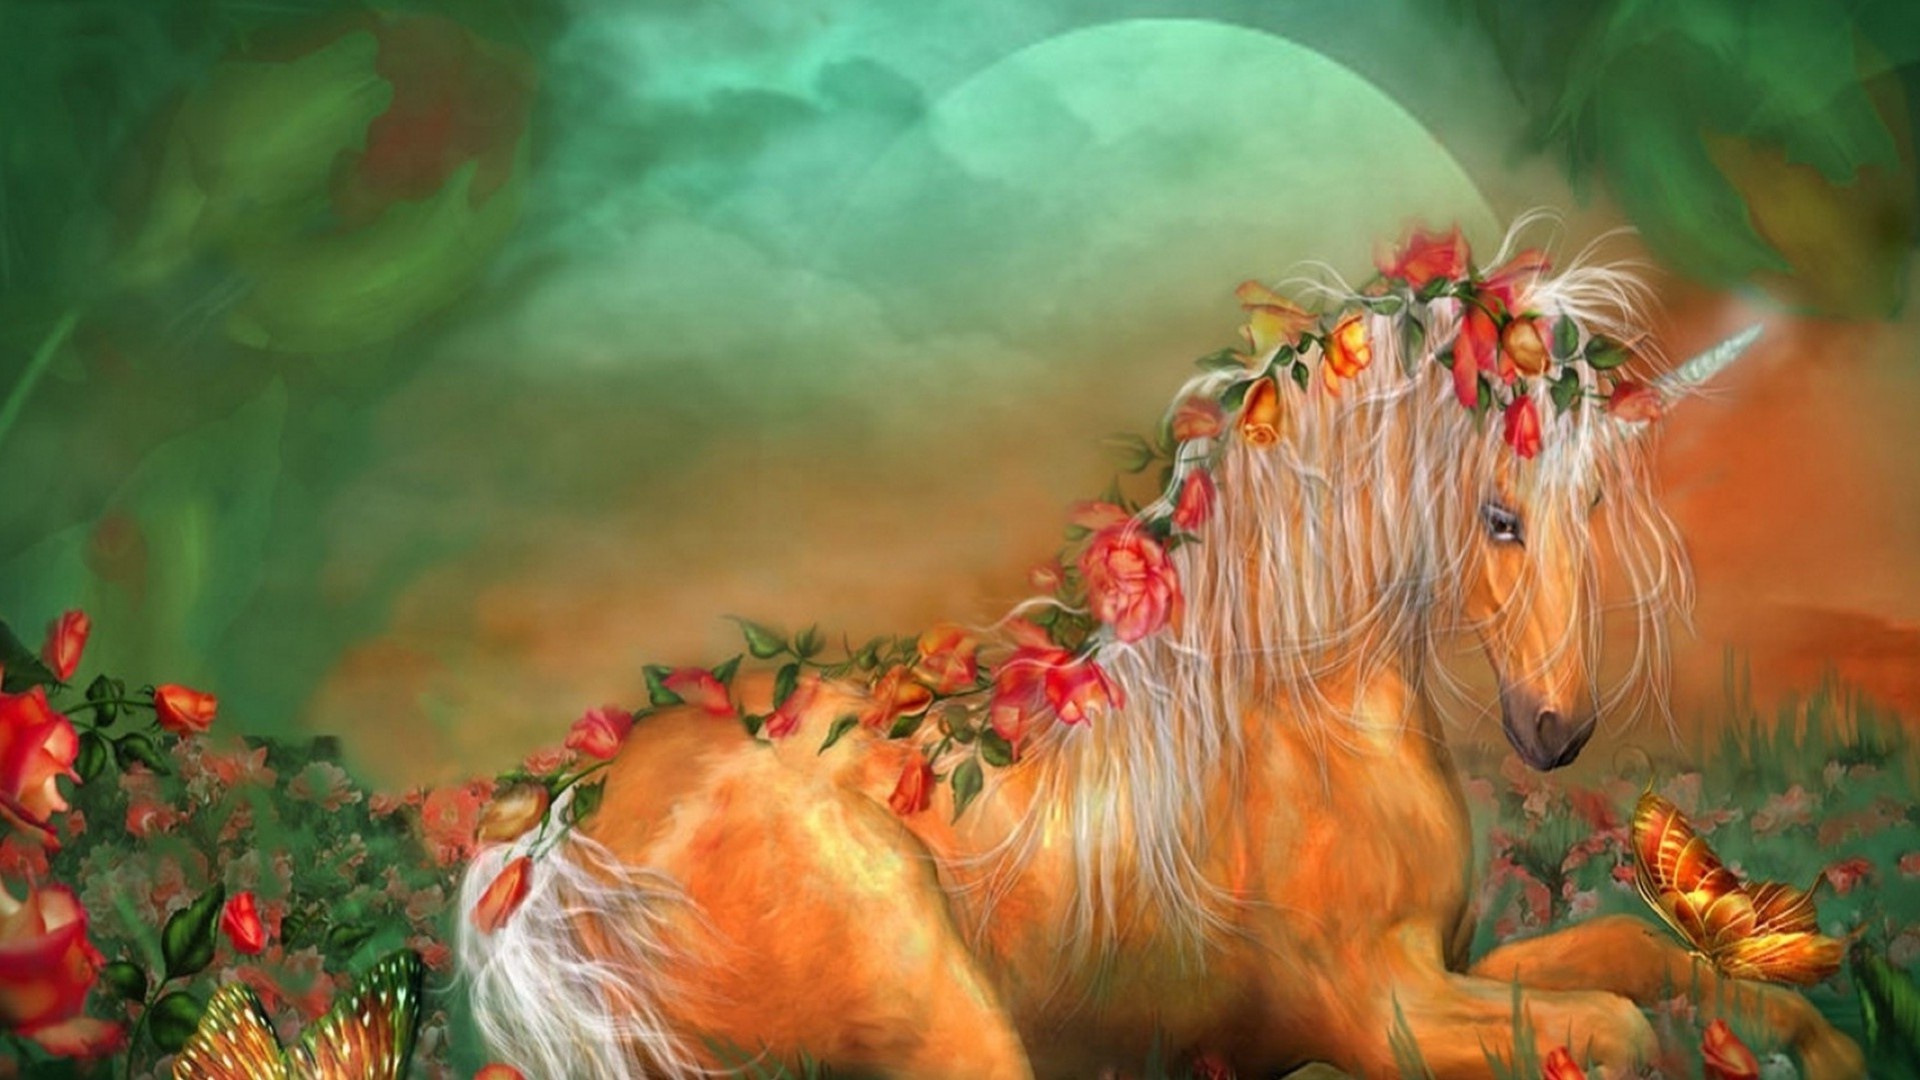 Magic Horses wallpaper photo hd